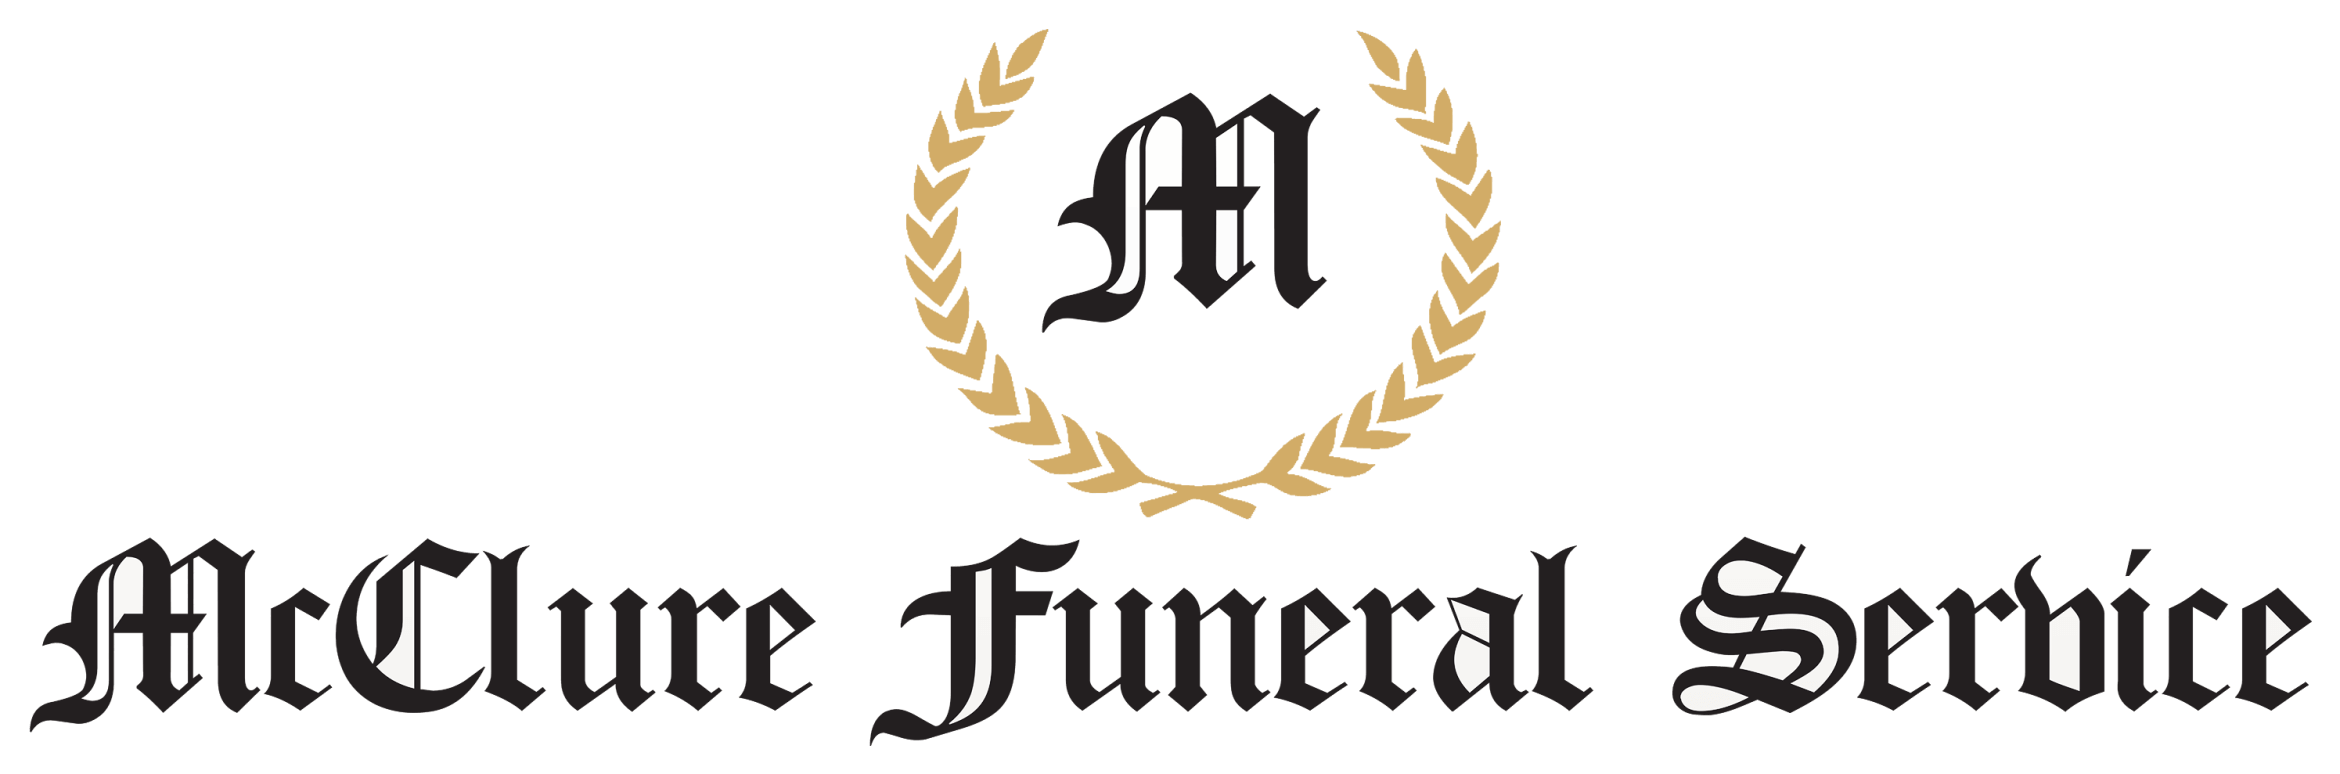 mcclure funeral home burlington nc obituaries